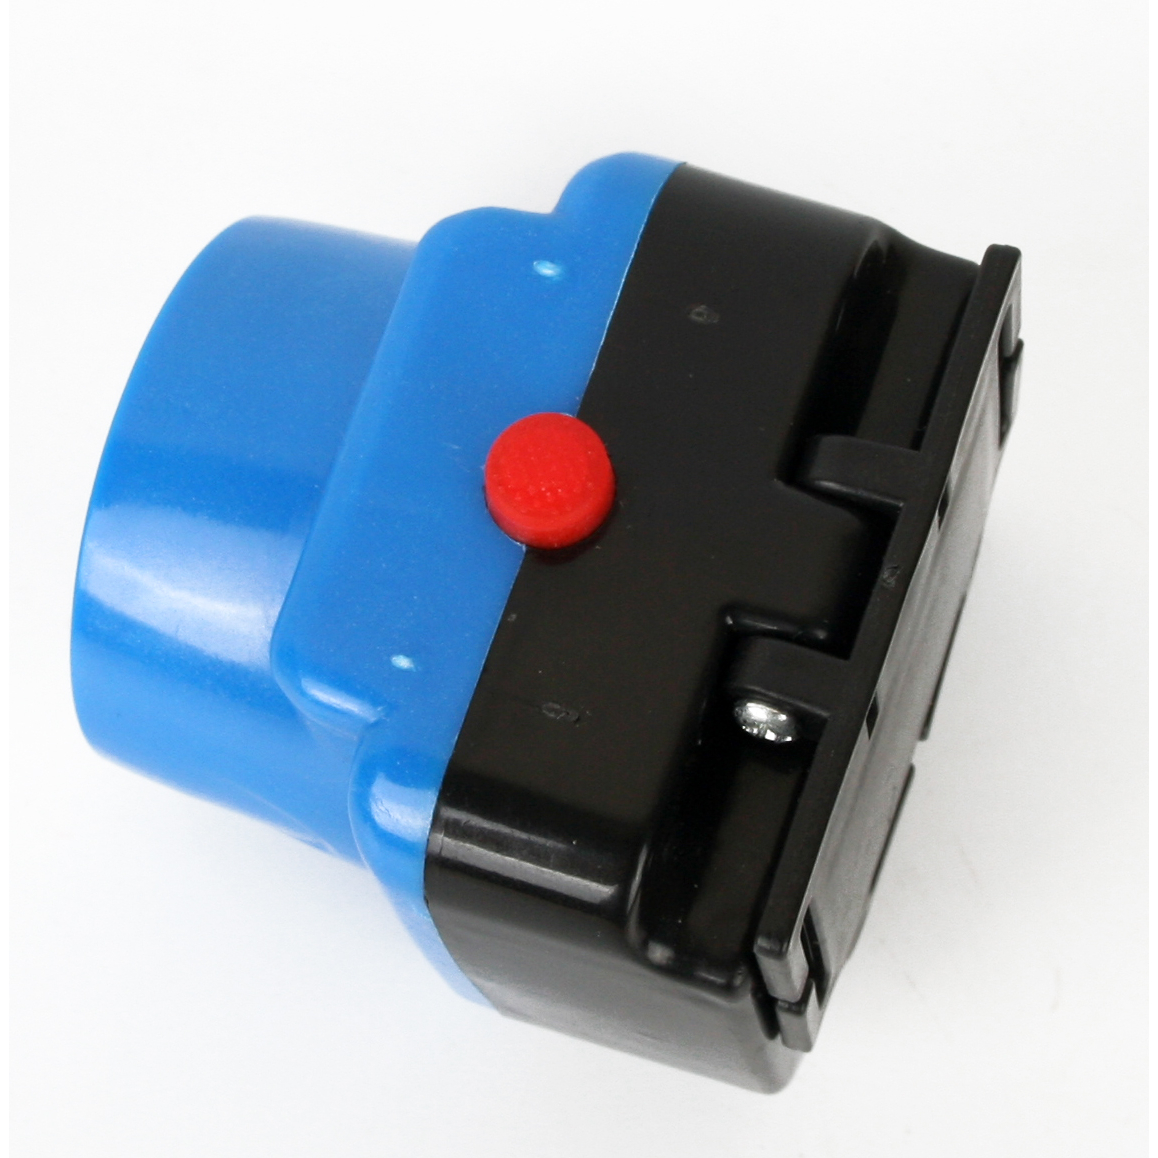 Фонарь налобный аккумуляторный LED5375 220В 0.4Вт LED 2 реж. пластик голуб. Ultraflash 14252